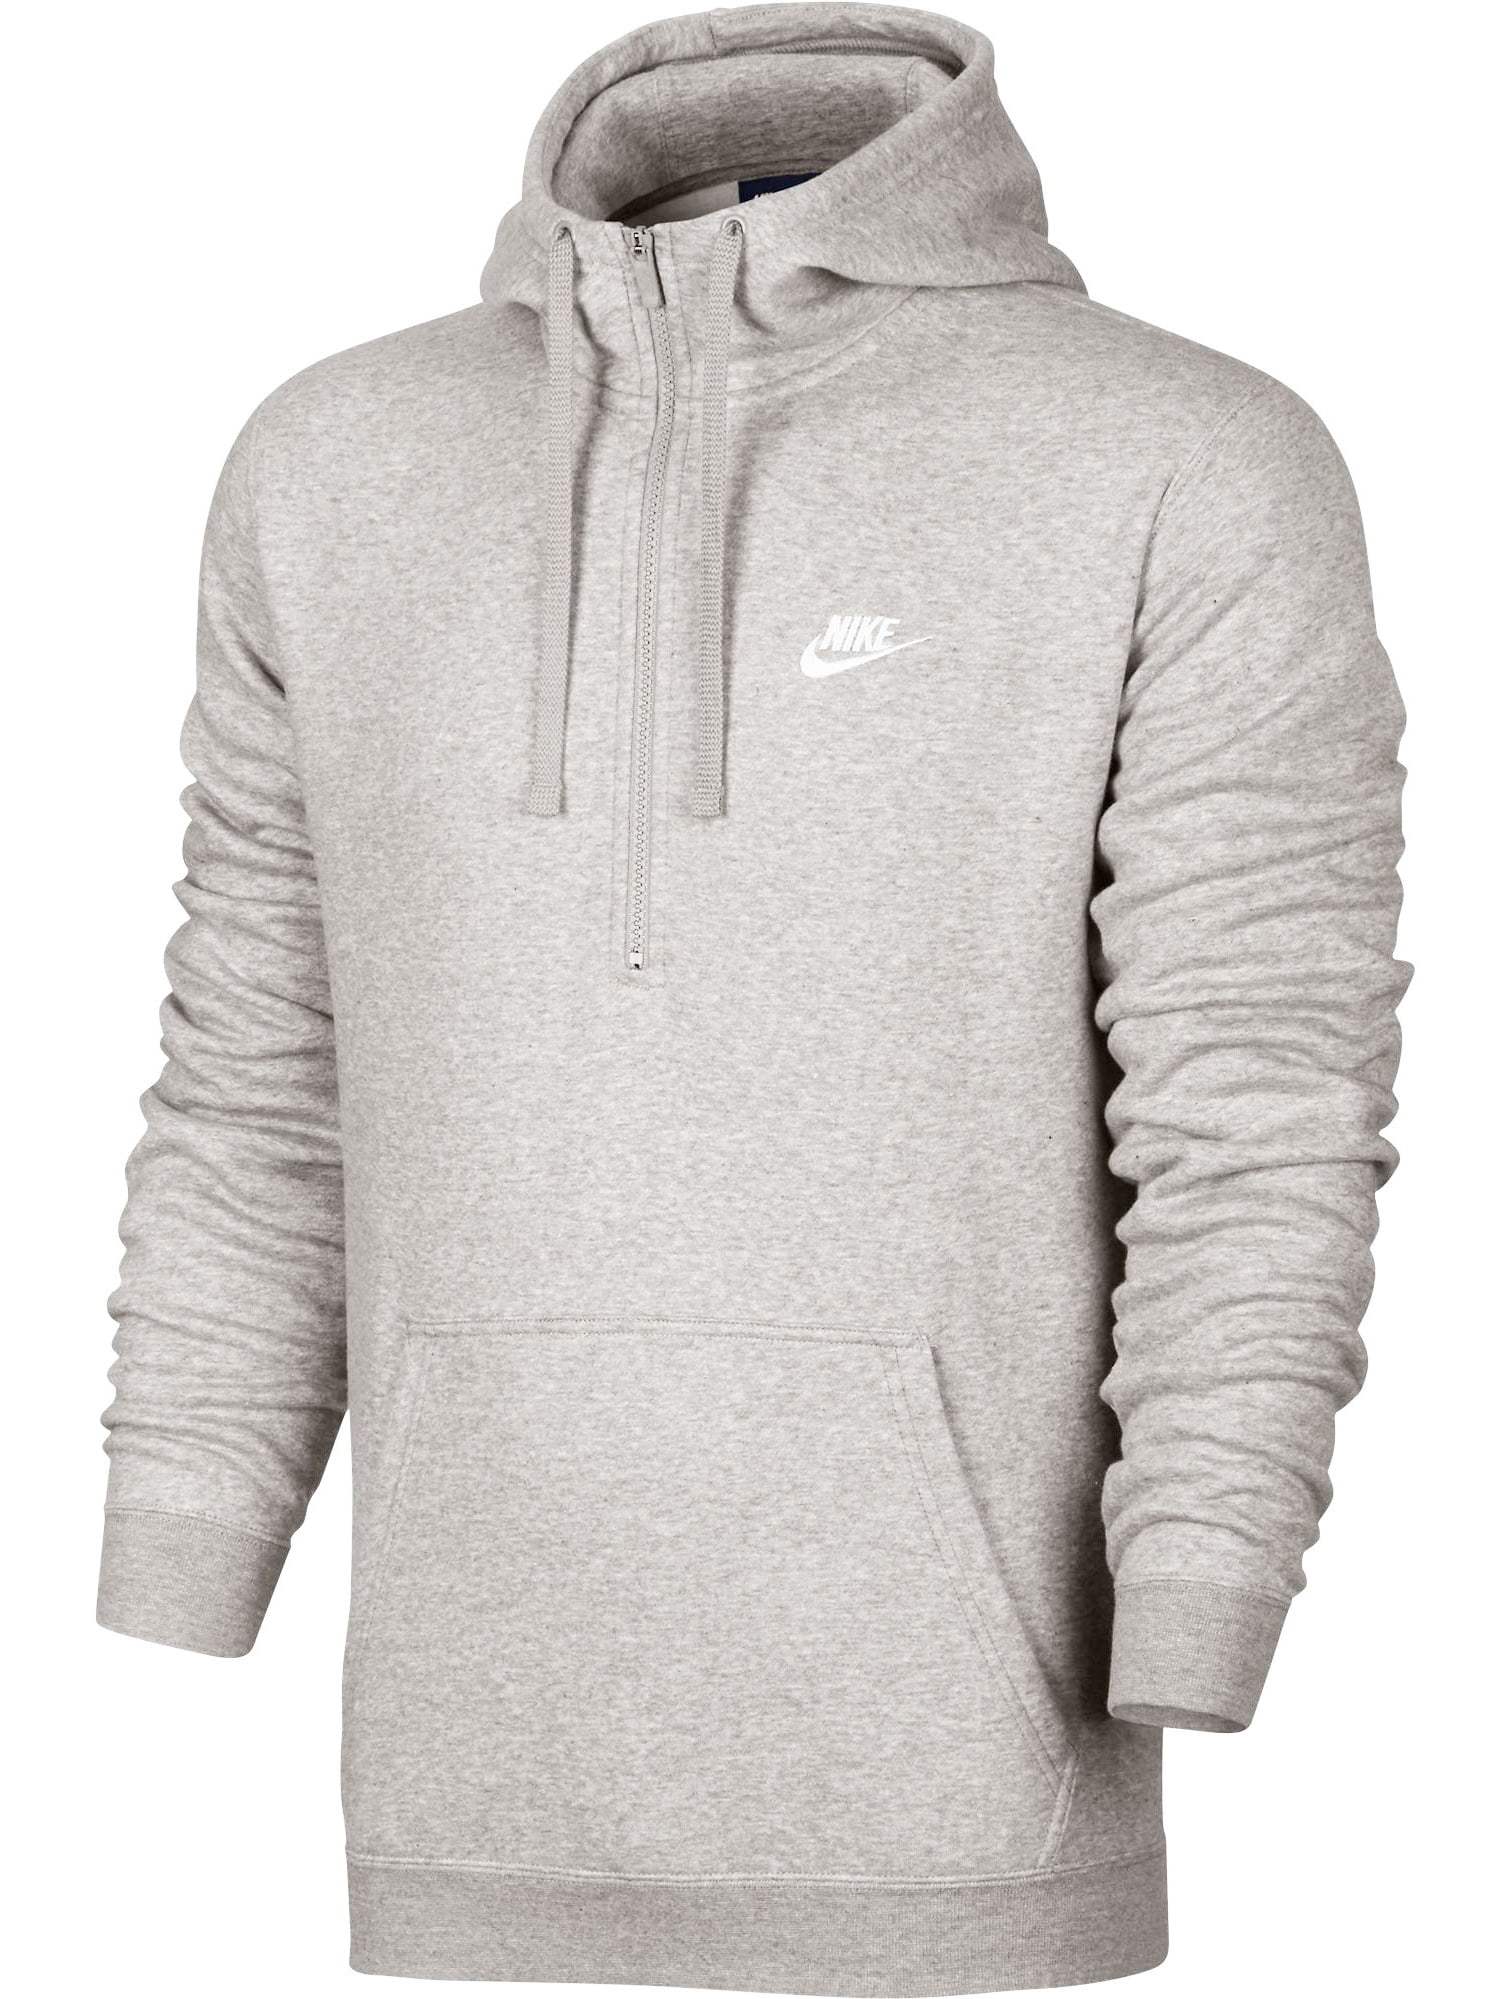 Nike - Nike Club Half Zip Longsleeve Men's Hoodie Grey/White 812519-063